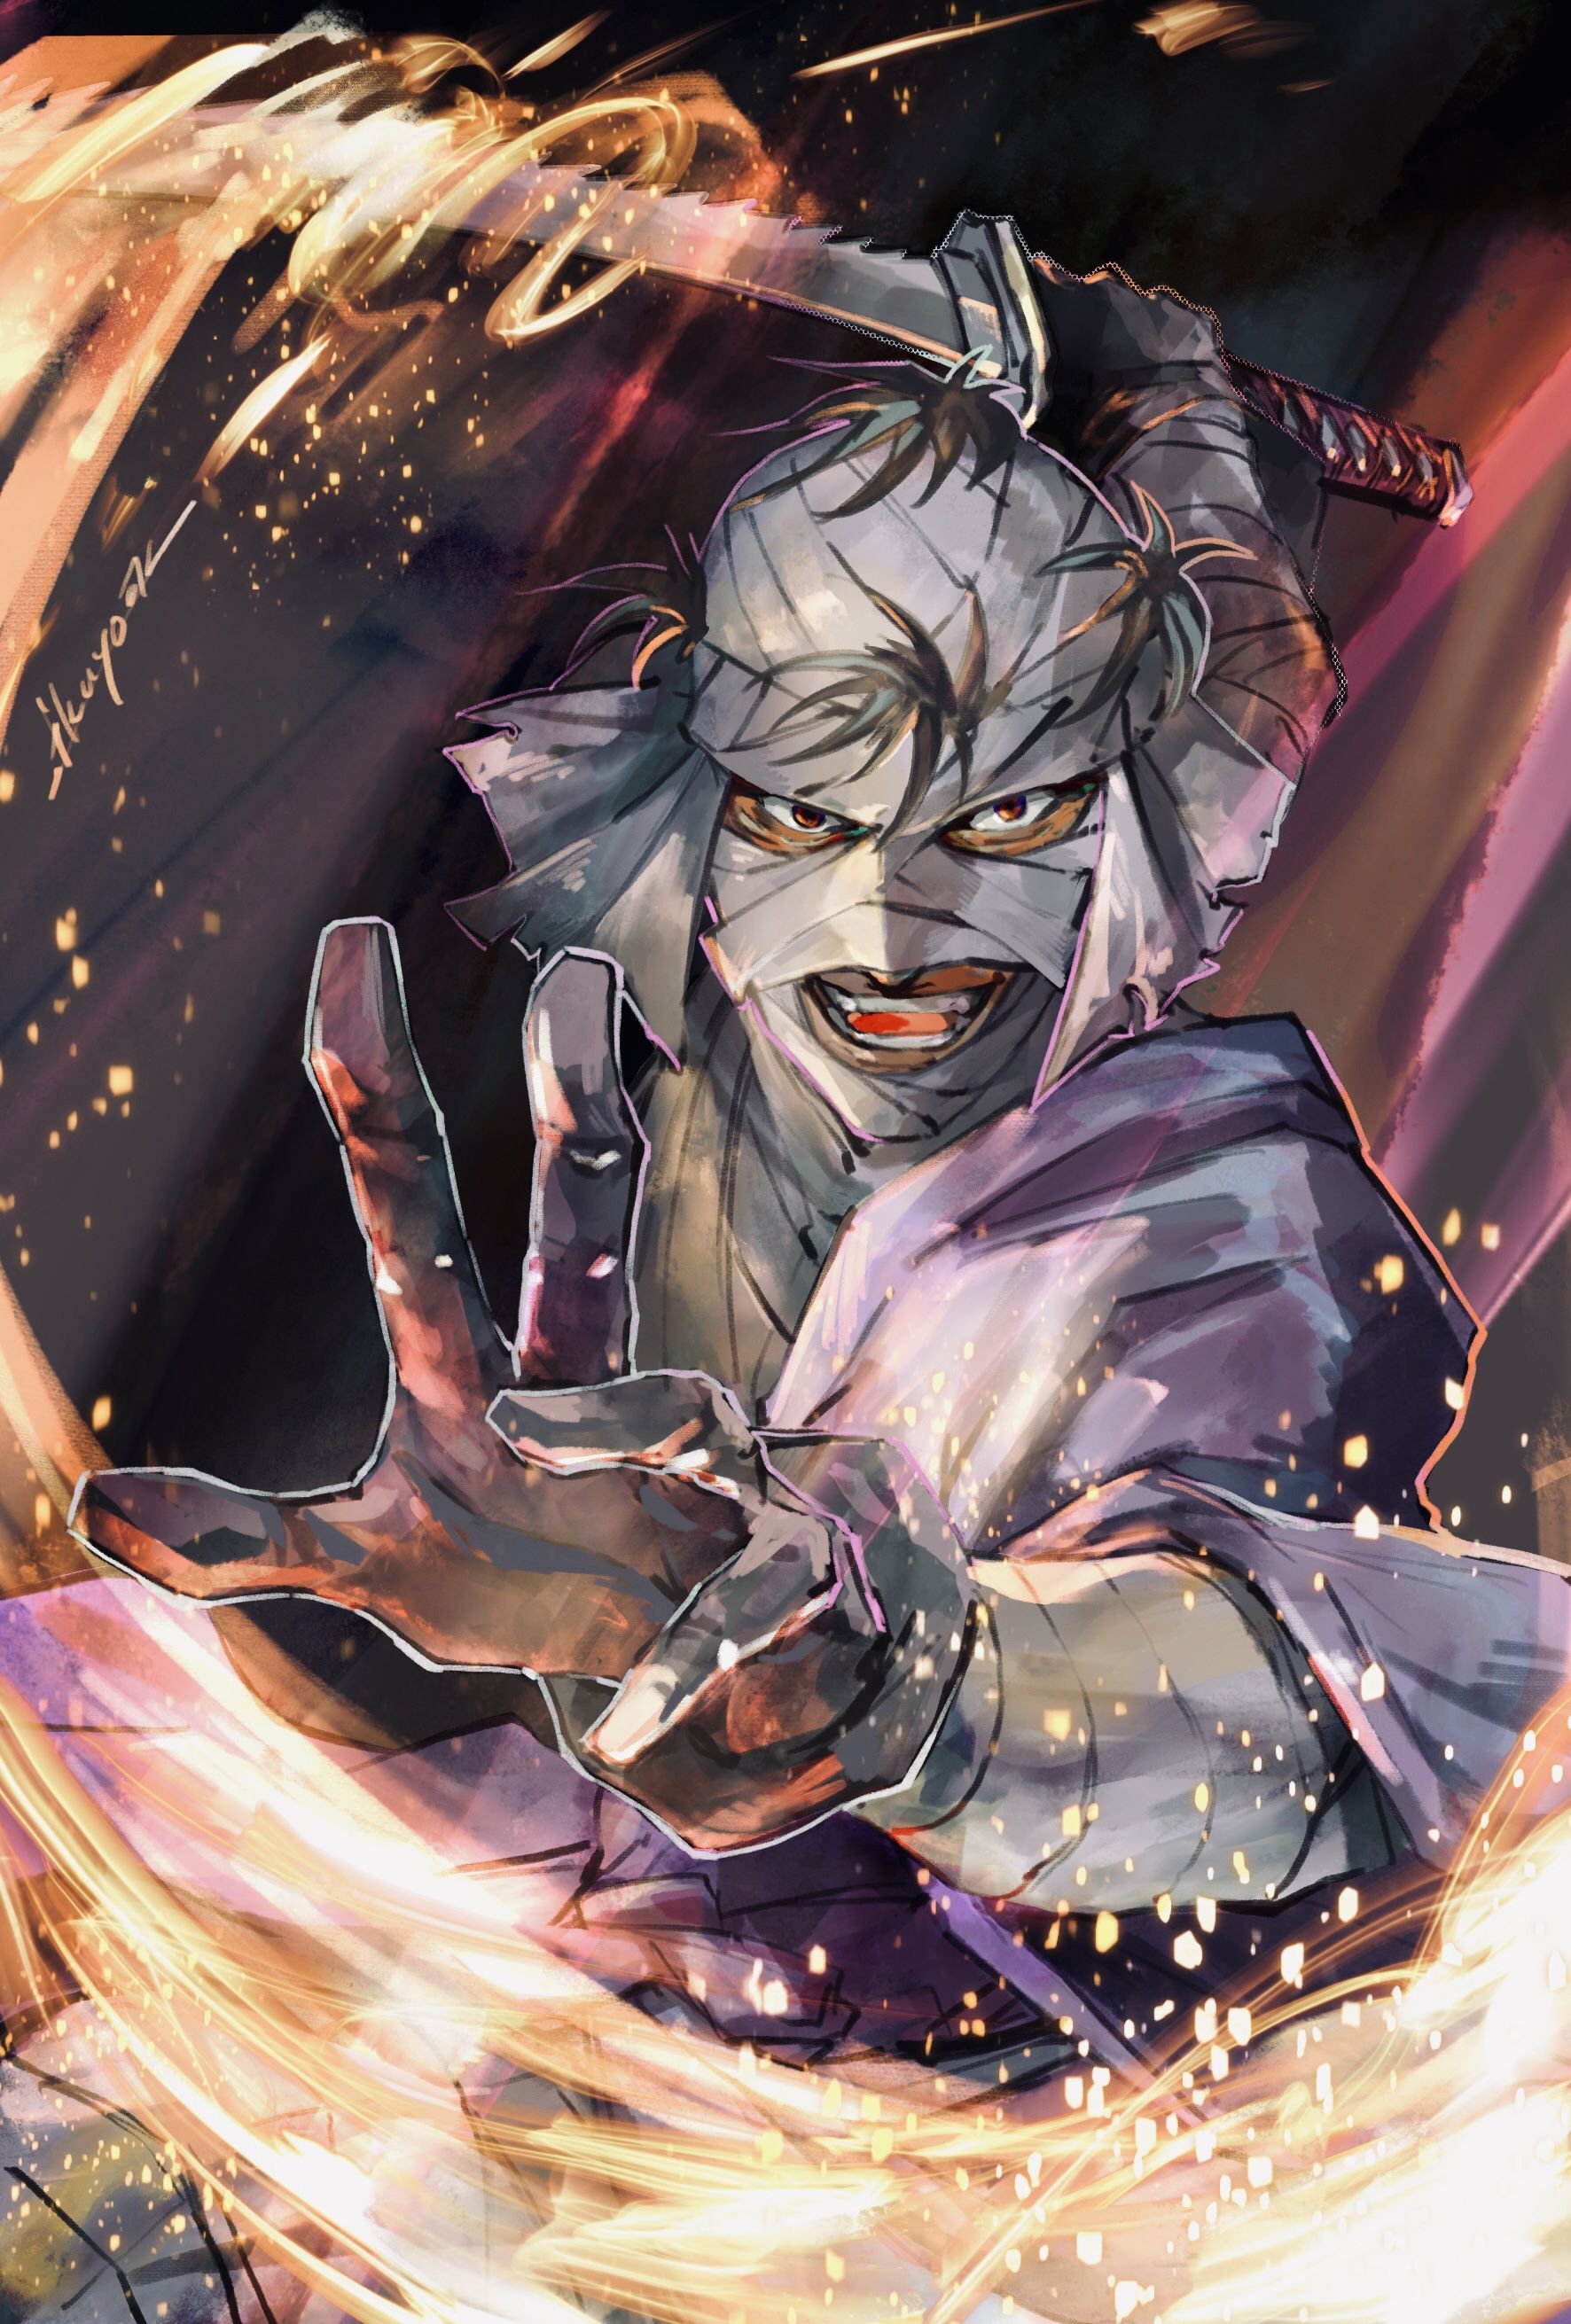 Shishio Makoto Kenshin. Anime Image Board